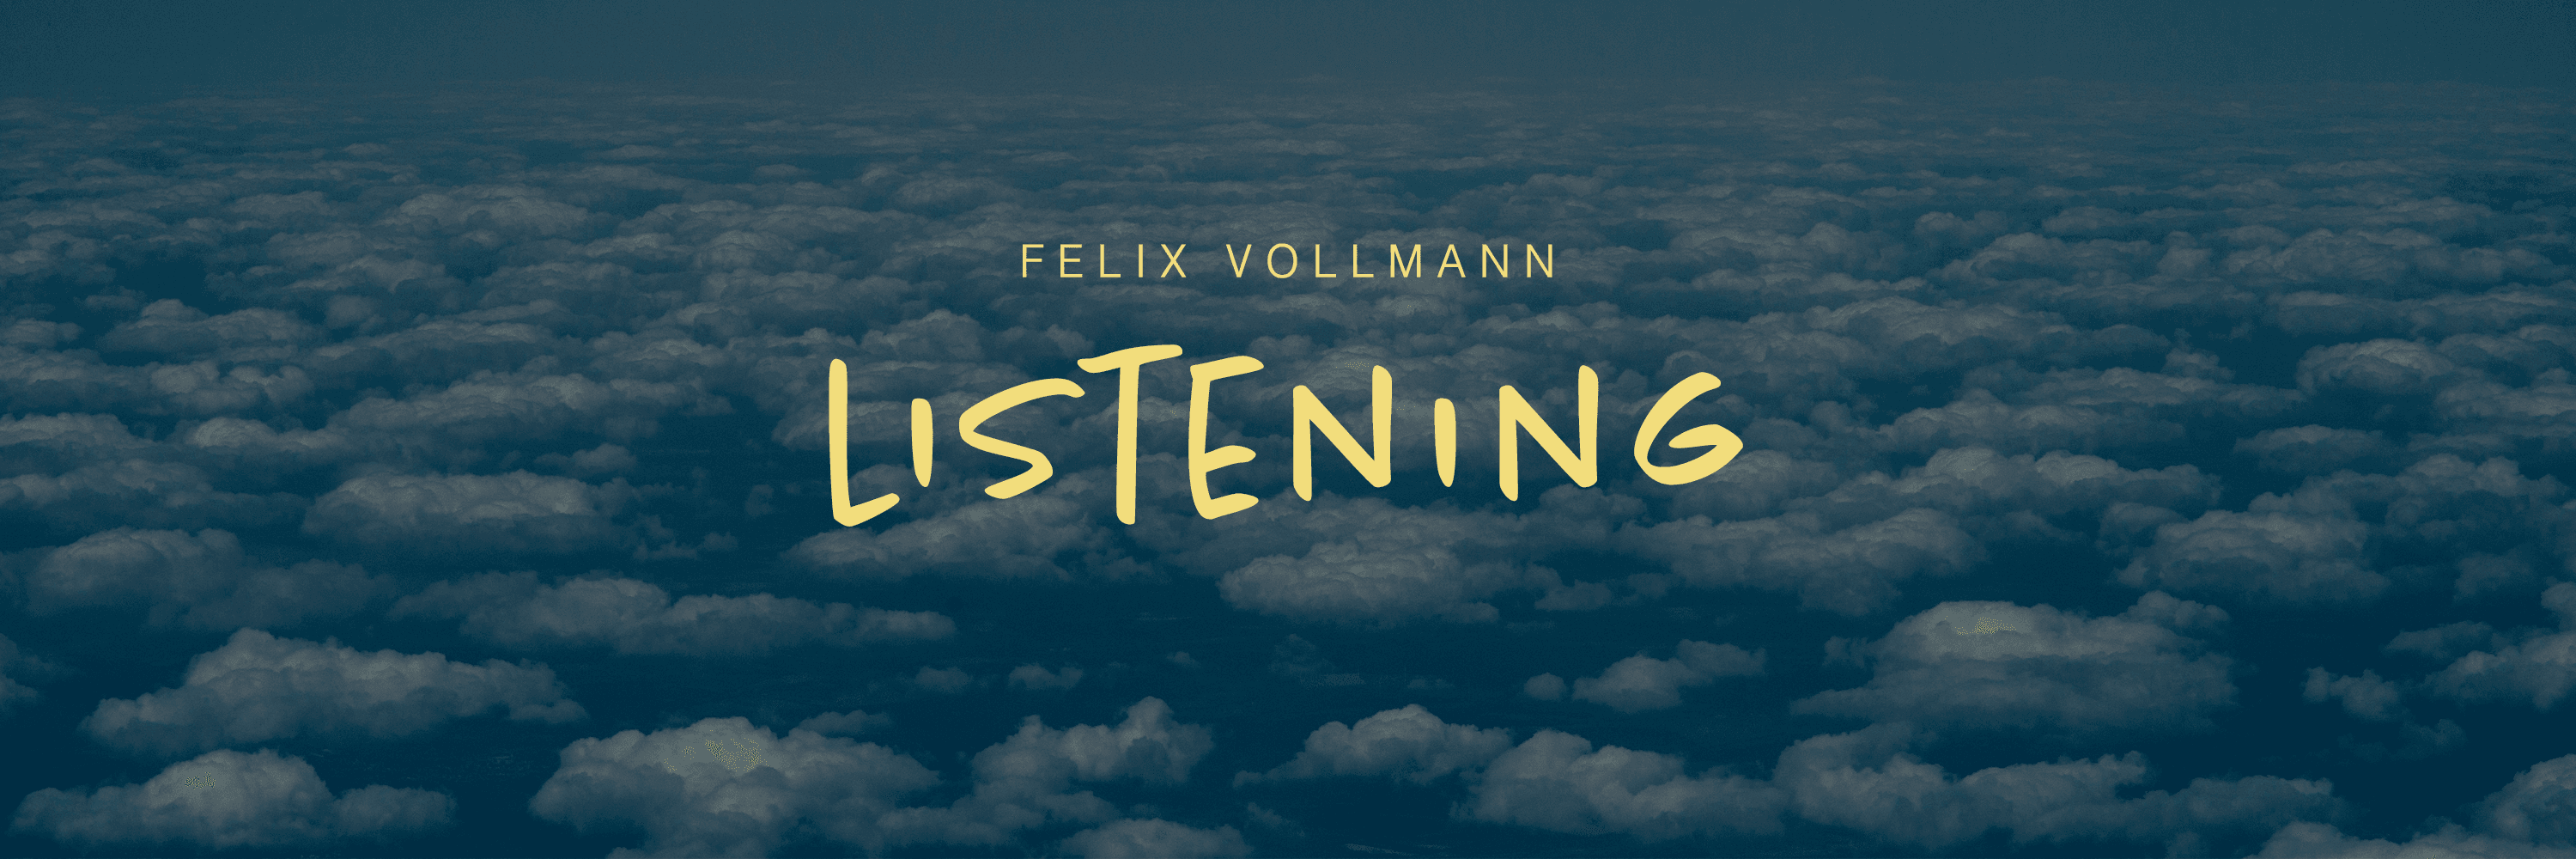 Listening by Felix Vollmann